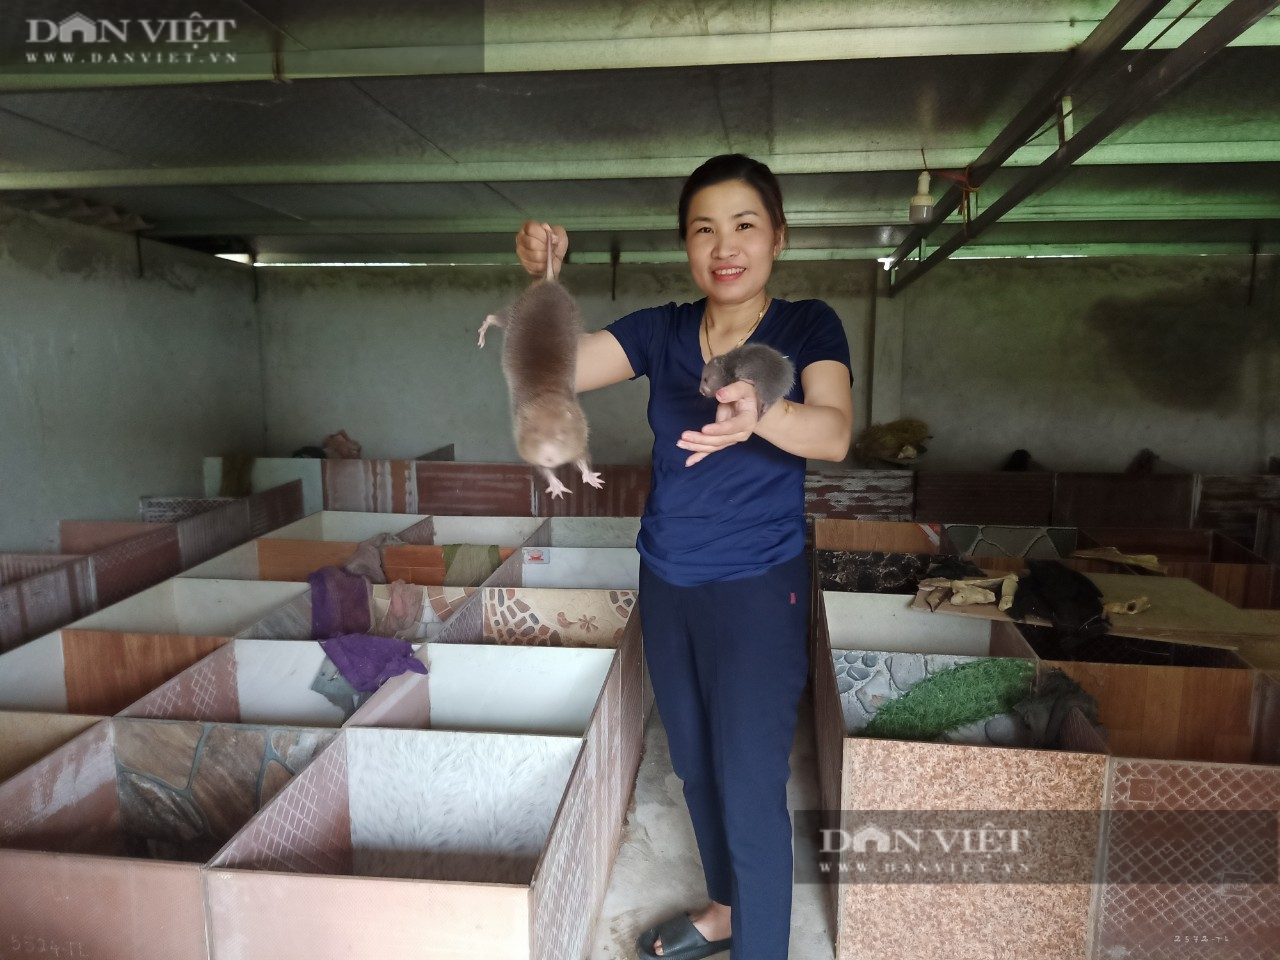 Nghệ An: Nữ nông dân người Thái thu nhập 200 triệu đồng/kg từ nuôi con đặc sản chỉ ăn cây tre, trồng rừng - Ảnh 1.